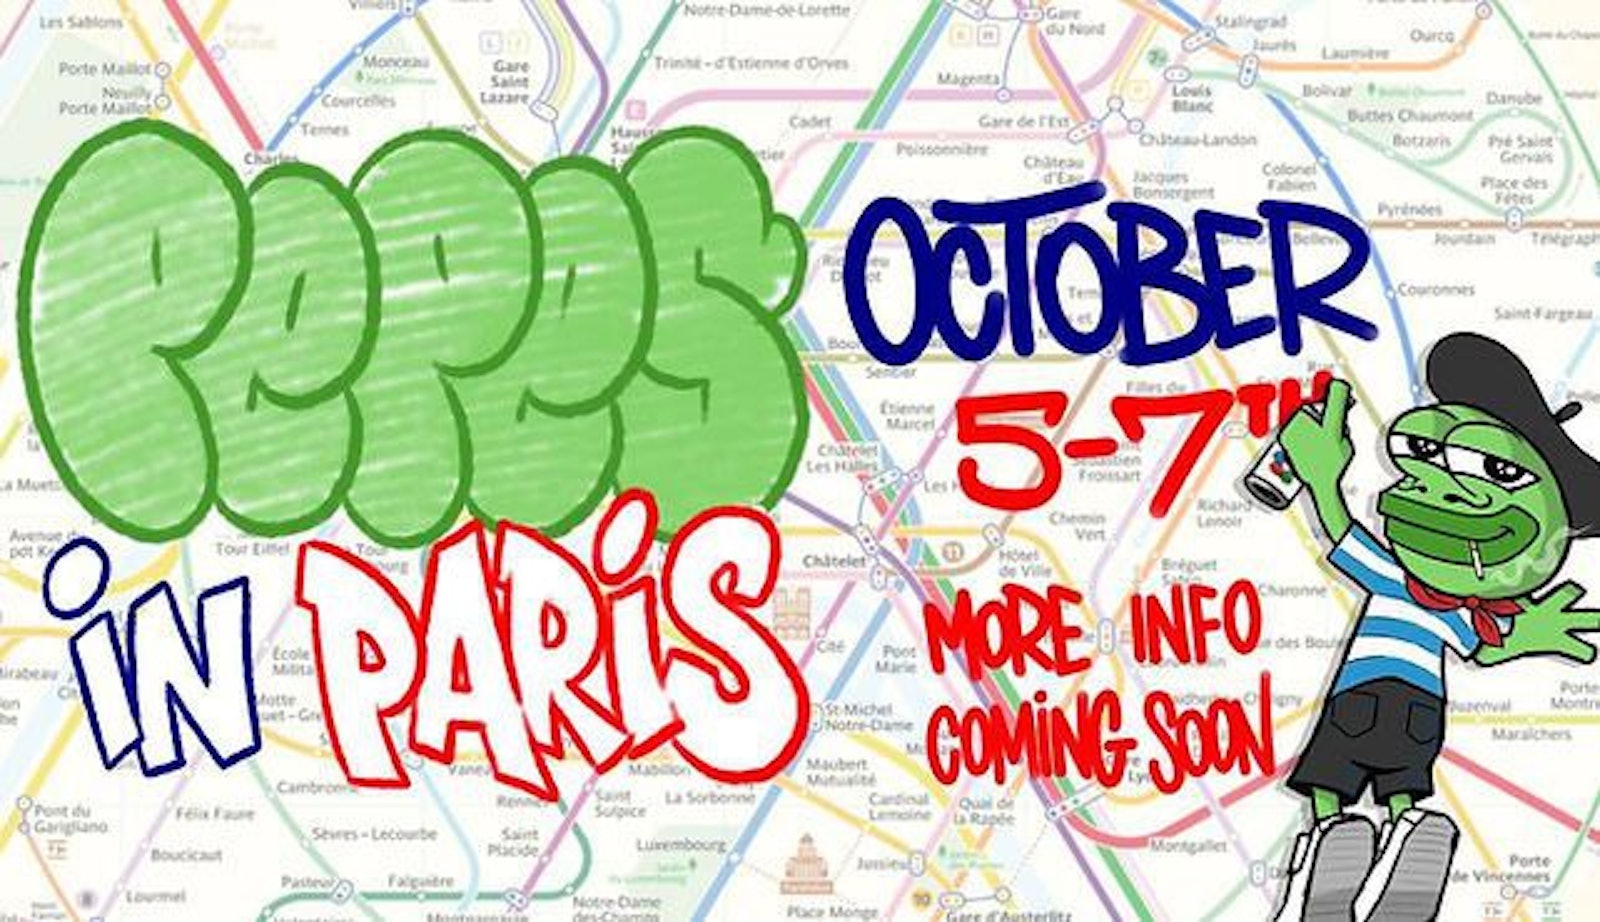 Paris Pepe Fest